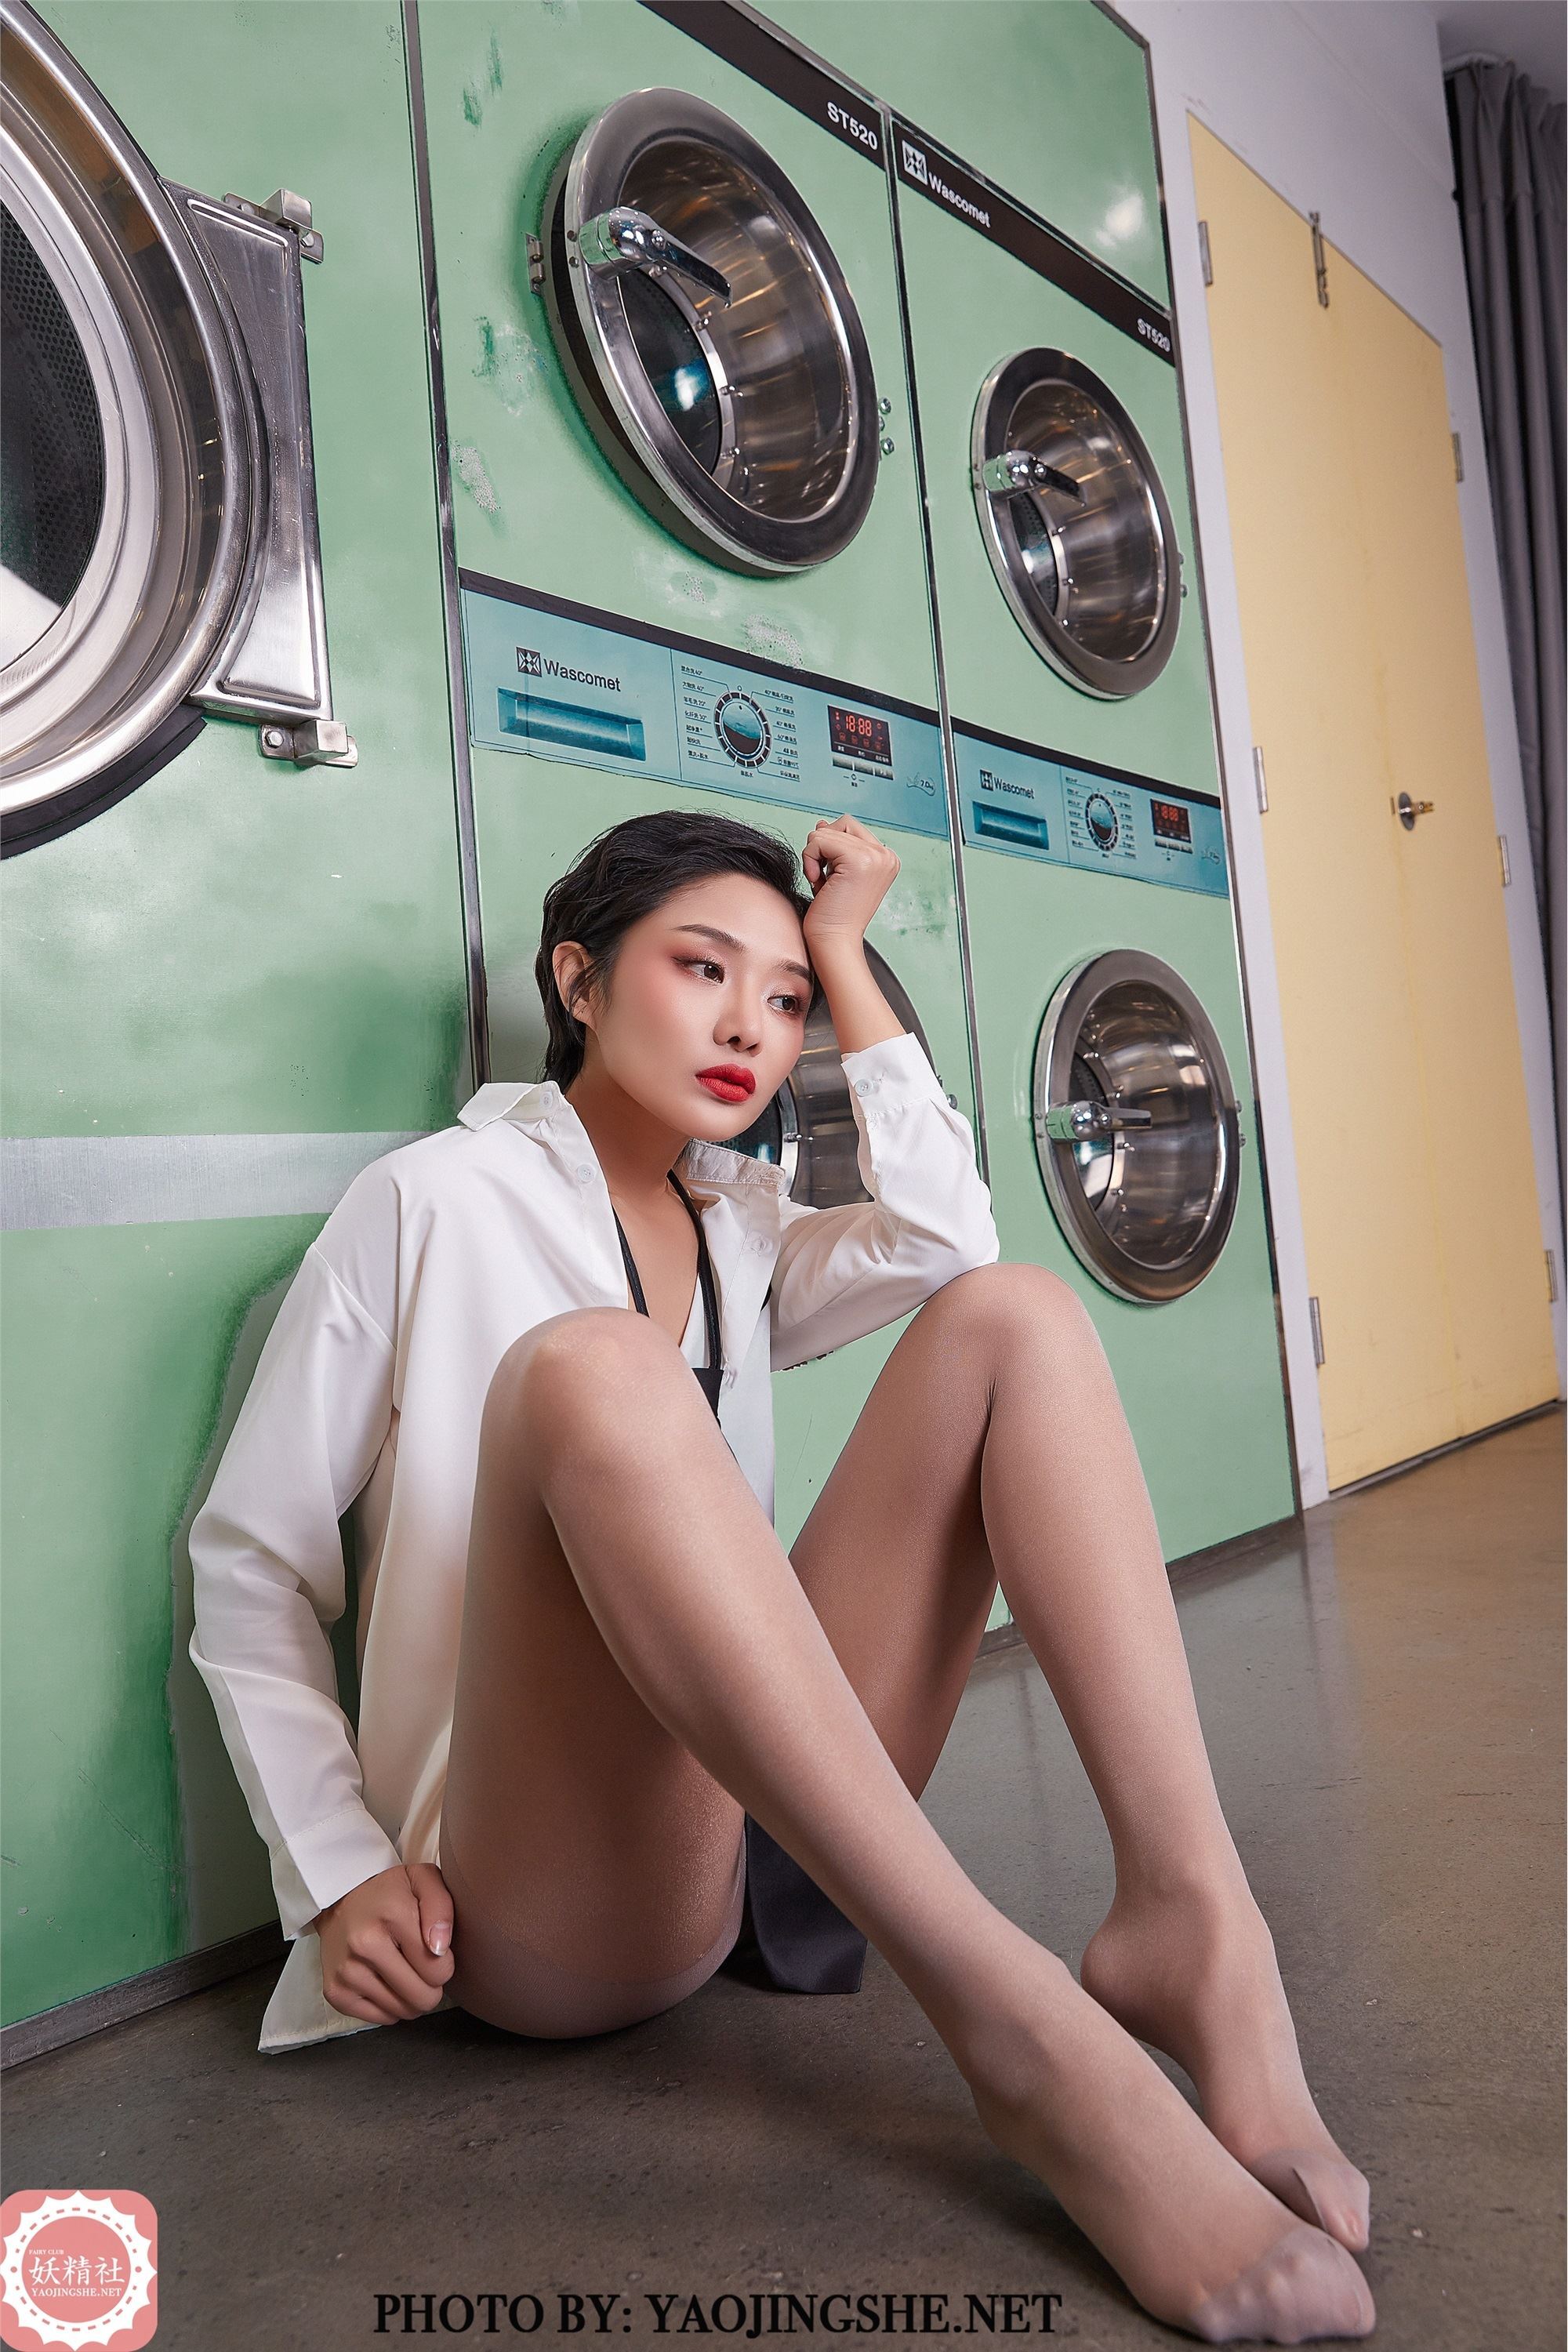 Yaojingshe Goblin Society V2015 Cocoa - Laundry Room